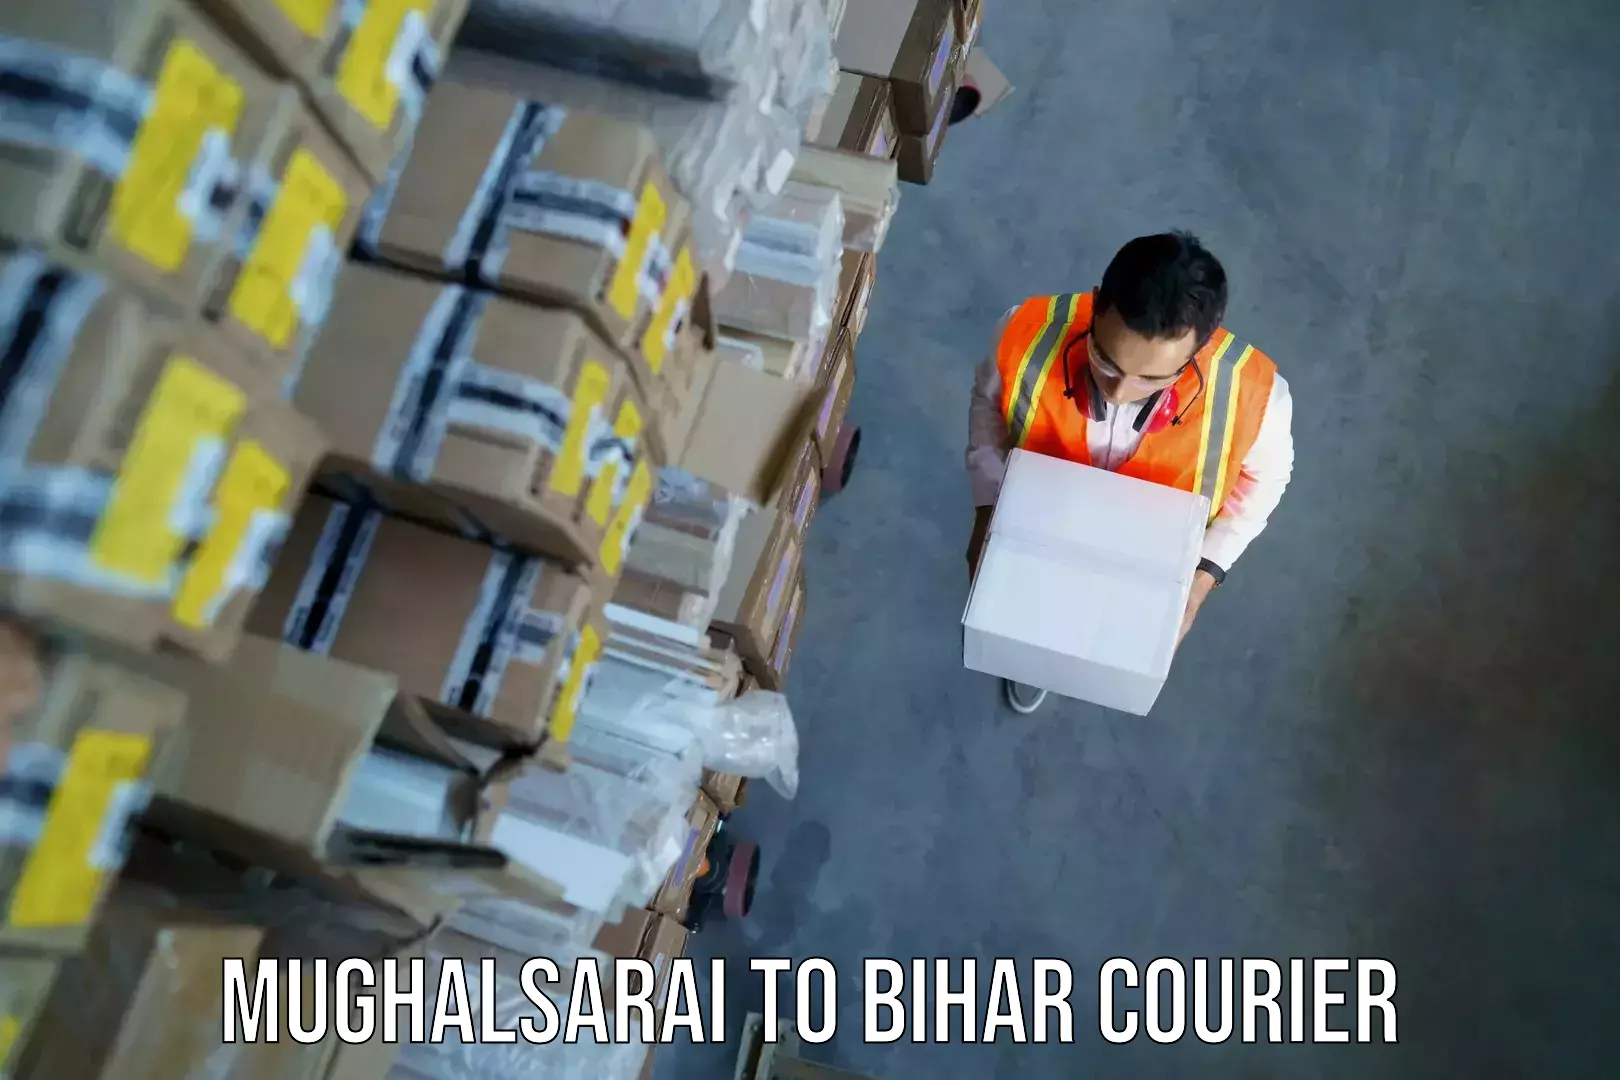 Baggage shipping experience in Mughalsarai to Bihar